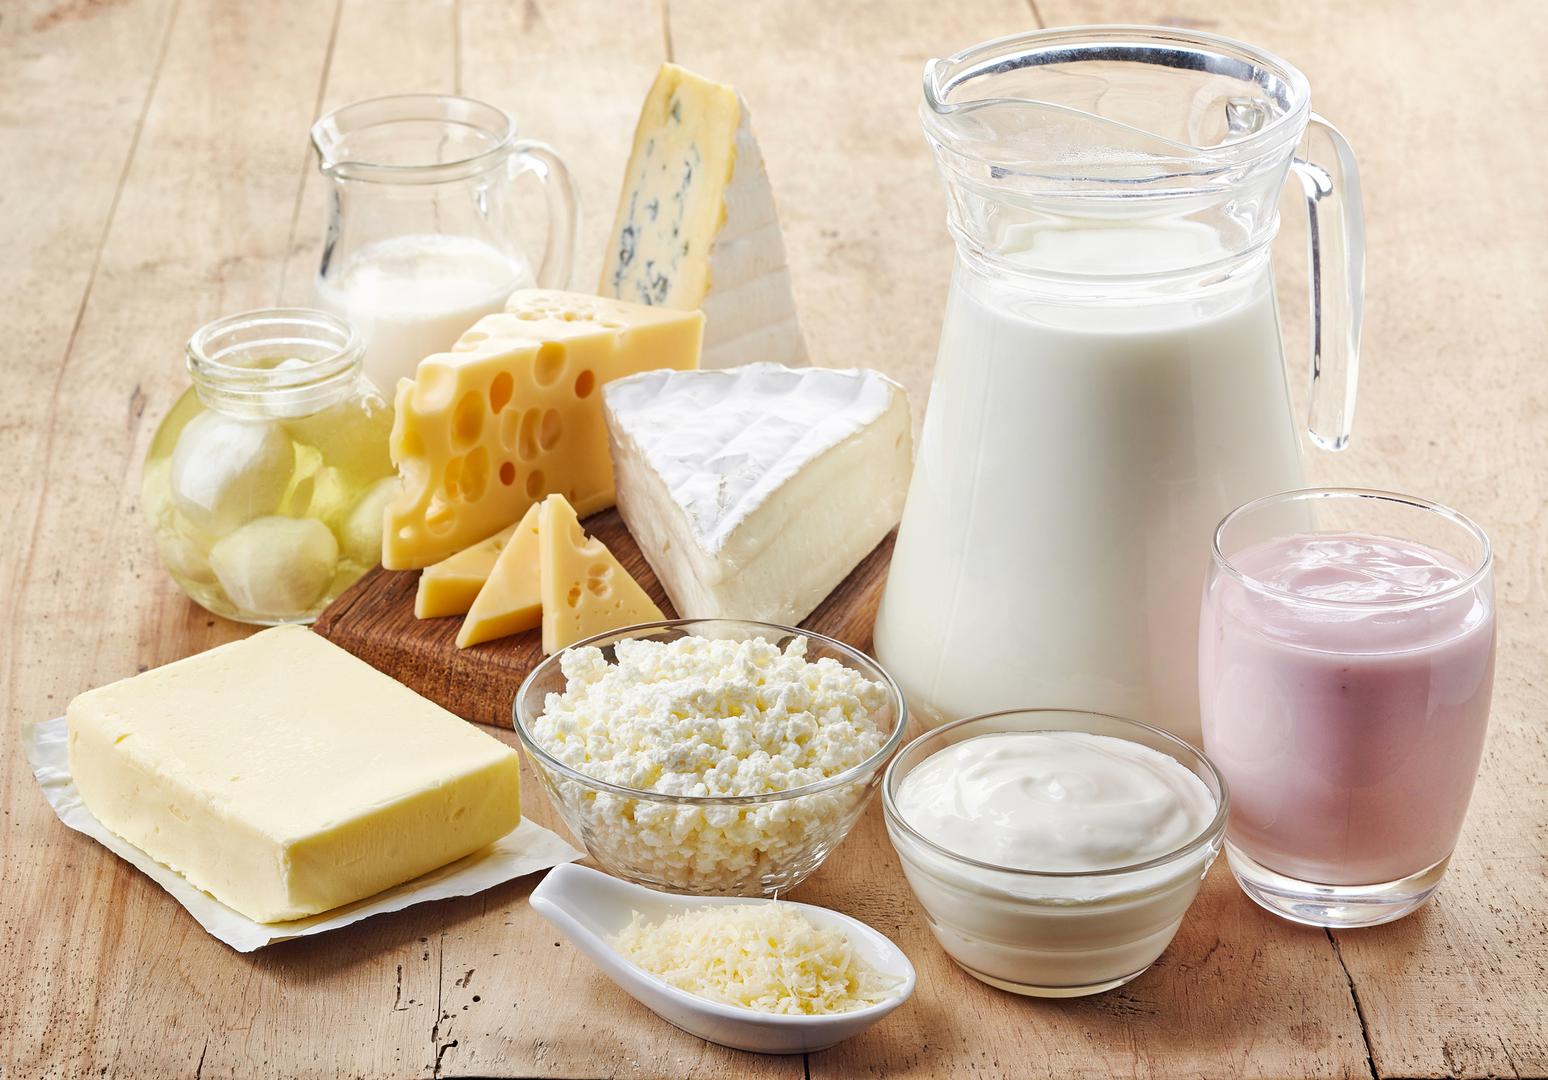 Mliječni proizvodi – Mlijeko i sir mogu uzrokovati brojne probleme vašem probavnom sustavu, pogotovo ako ne tolerirate laktozu.